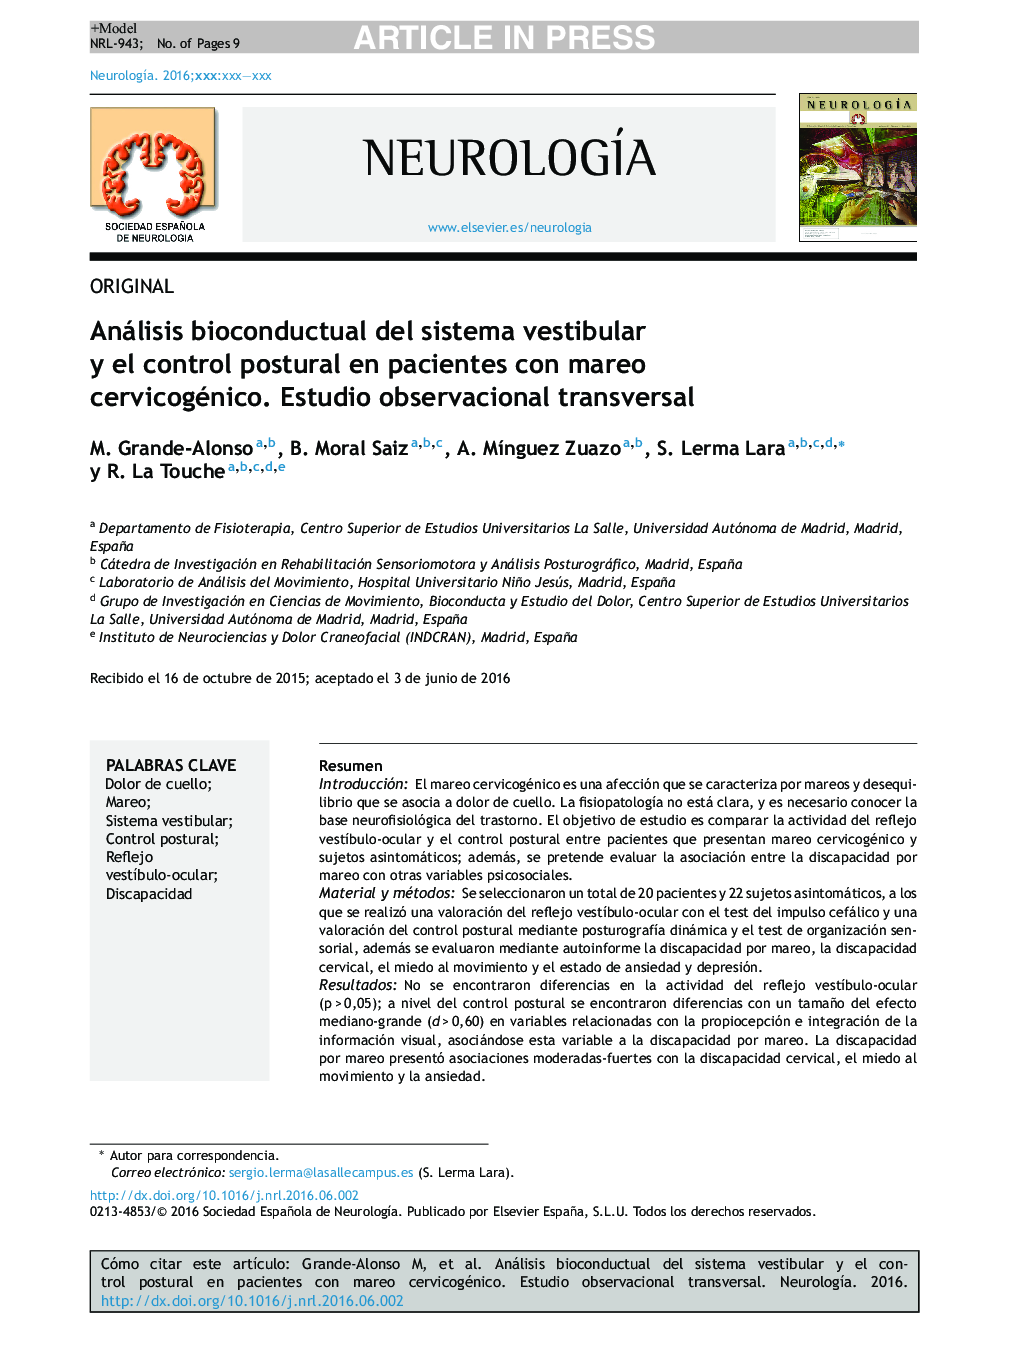 Análisis bioconductual del sistema vestibular y el control postural en pacientes con mareo cervicogénico. Estudio observacional transversal